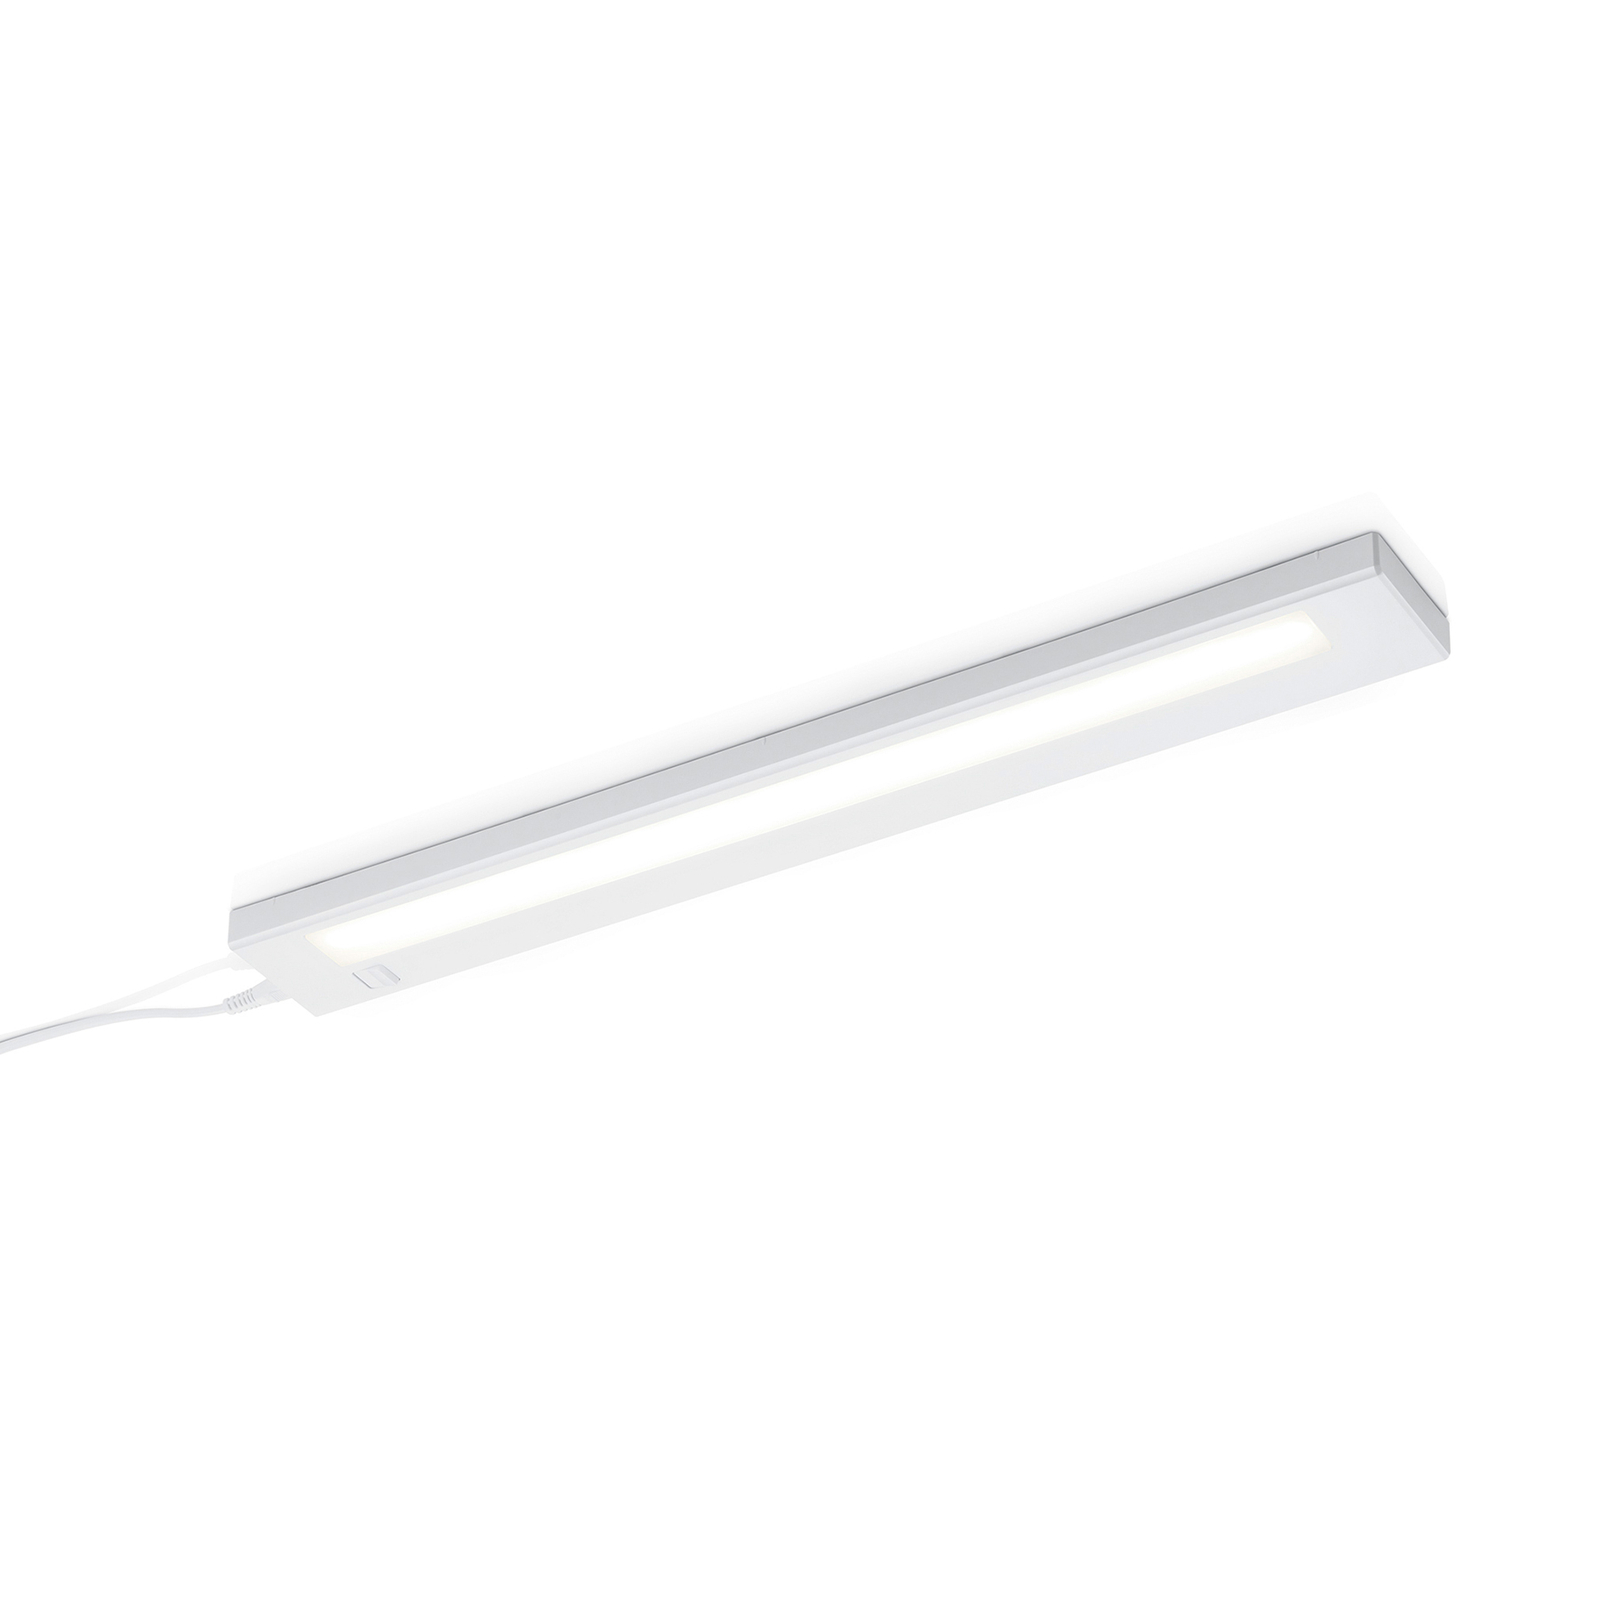 LED-Unterbauleuchte Alino, weiß, Länge 55 cm